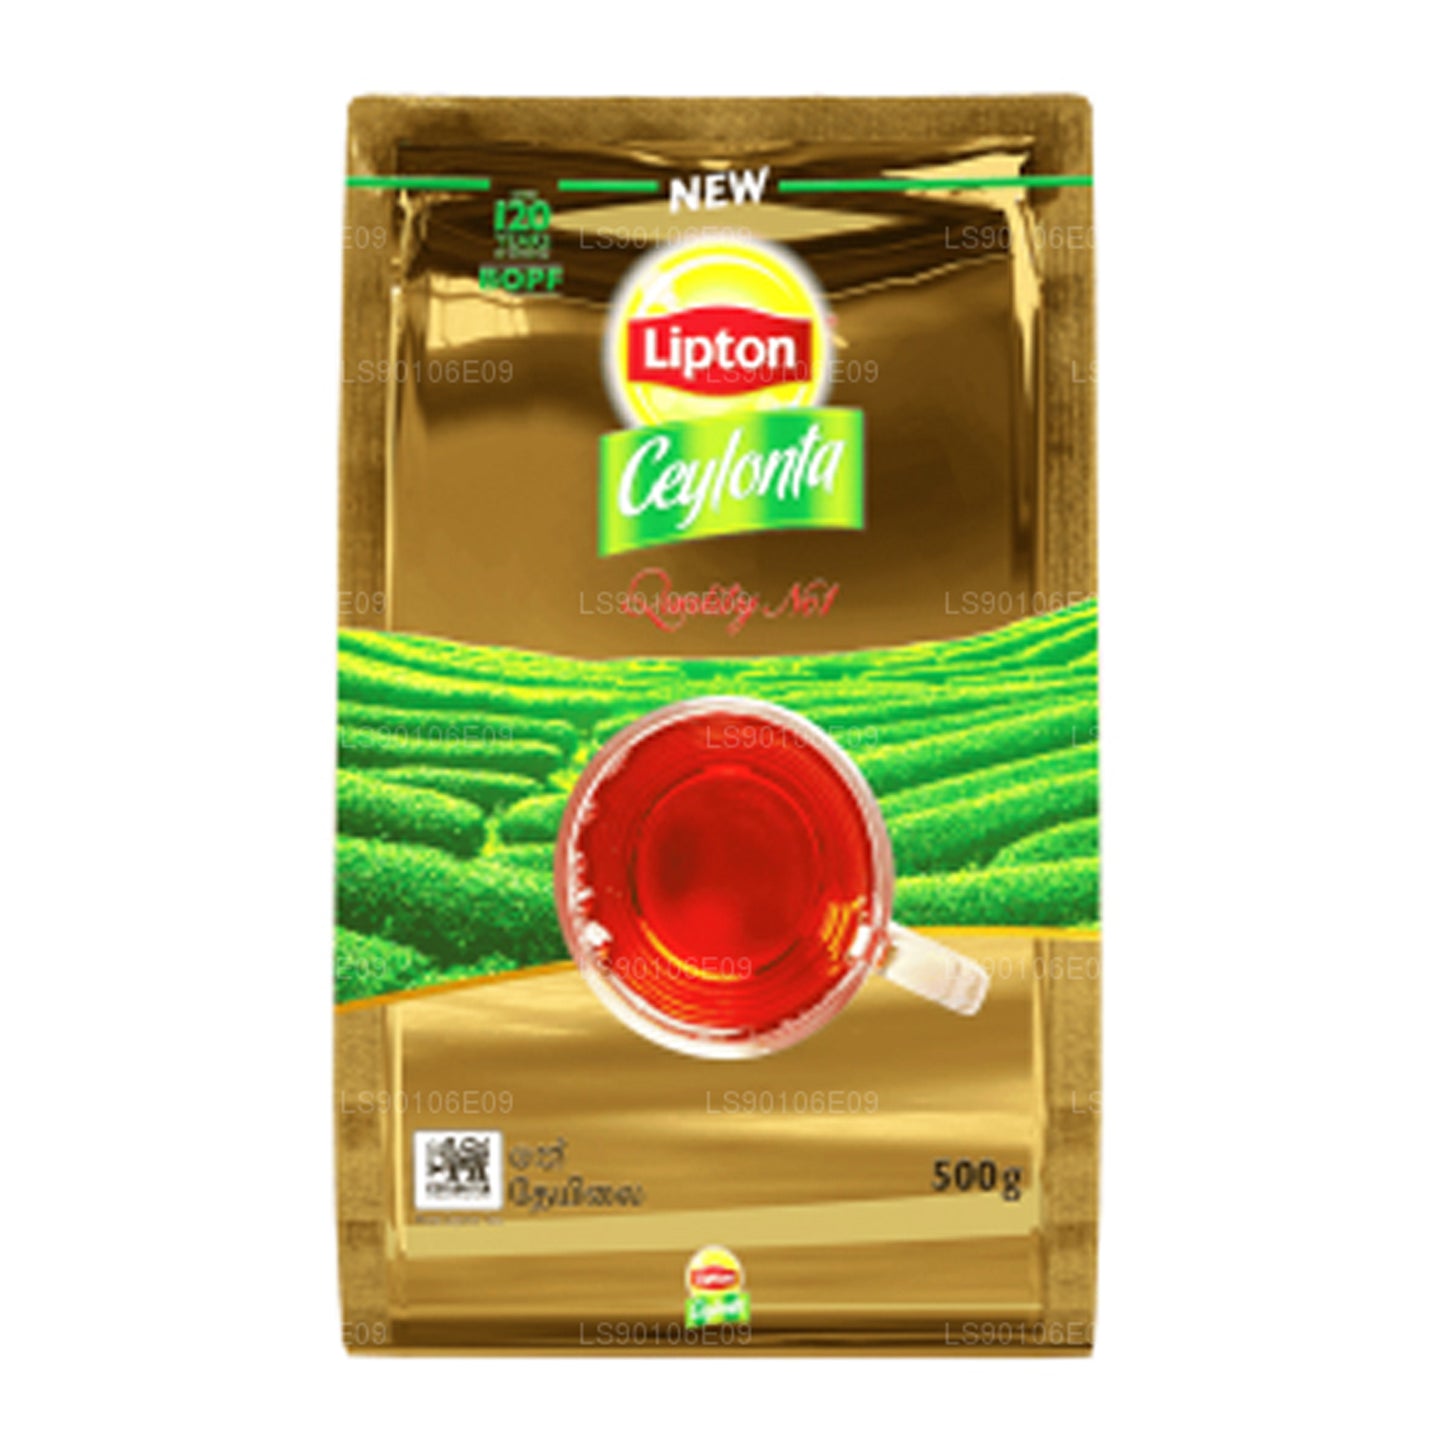 Bolsa de té negro Lipton Ceylonta (500 g)